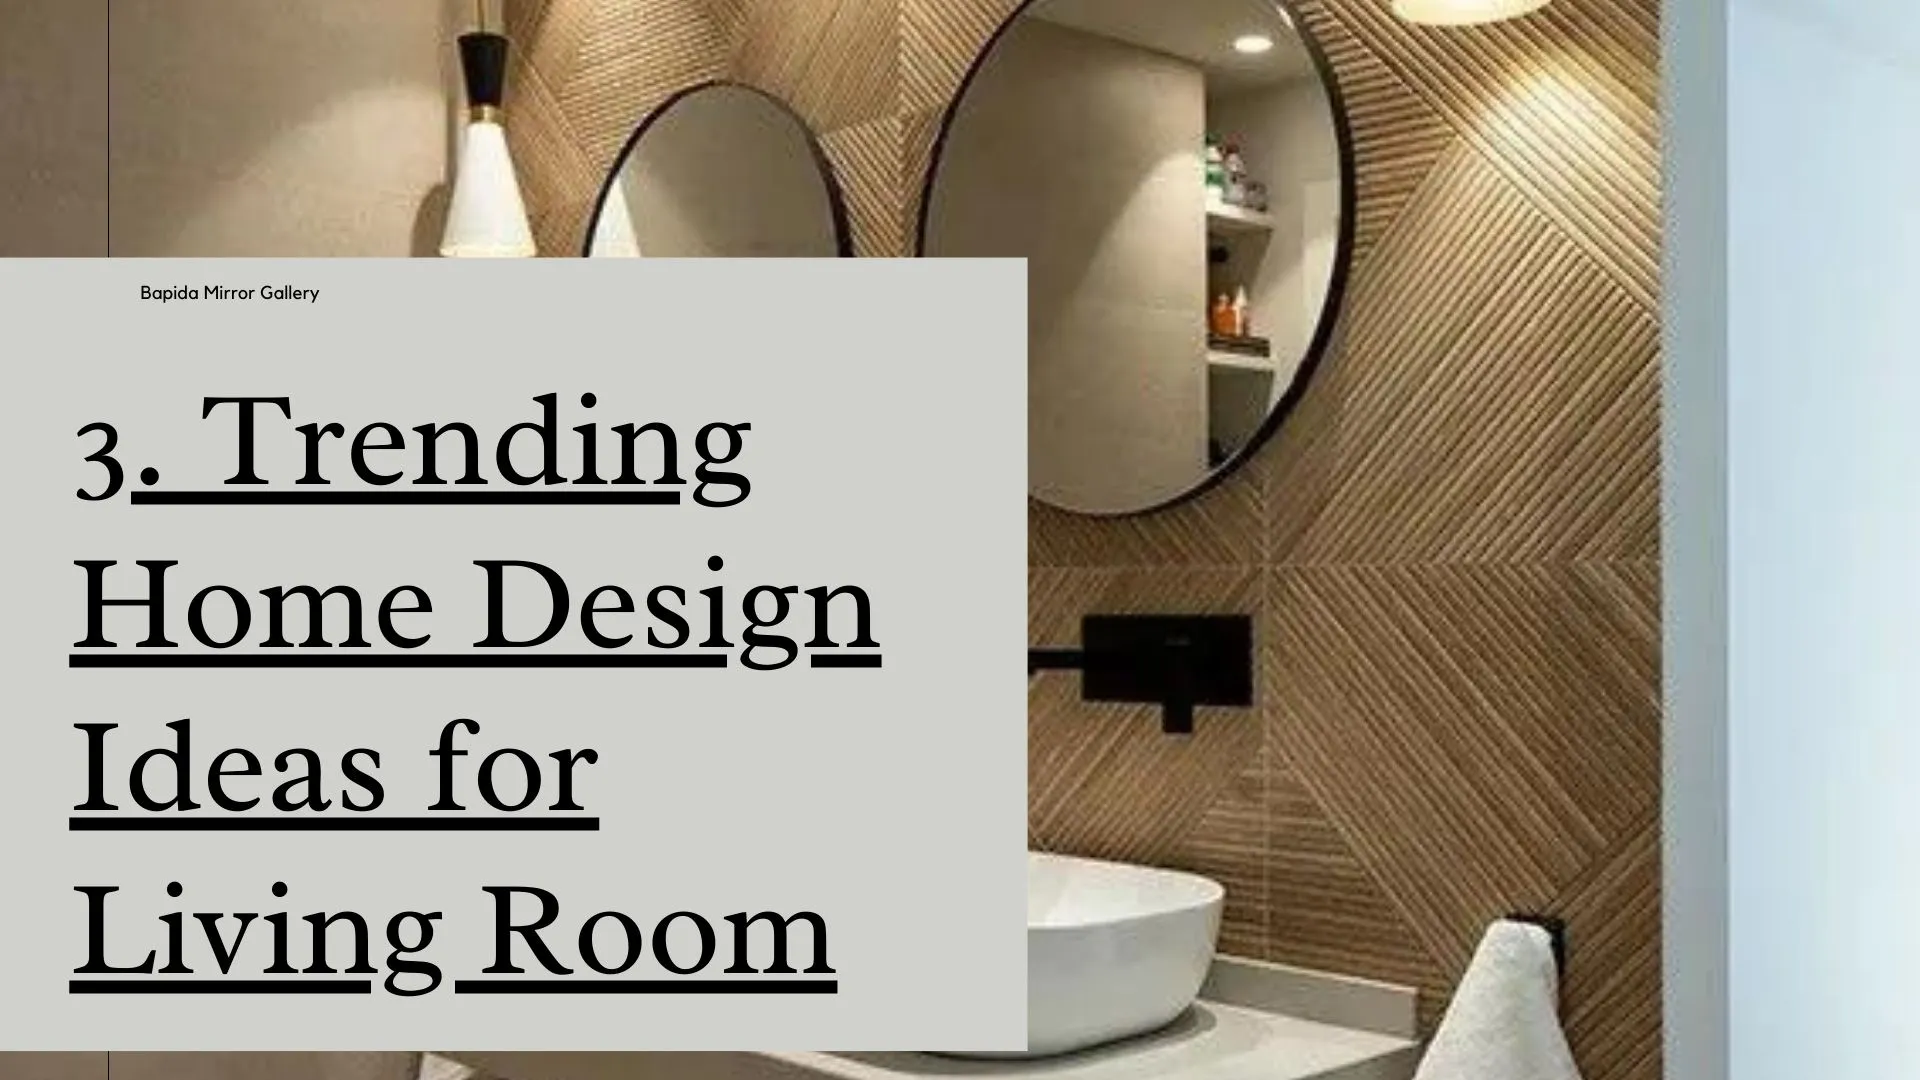 3. Trending Home Design Ideas for Living Room